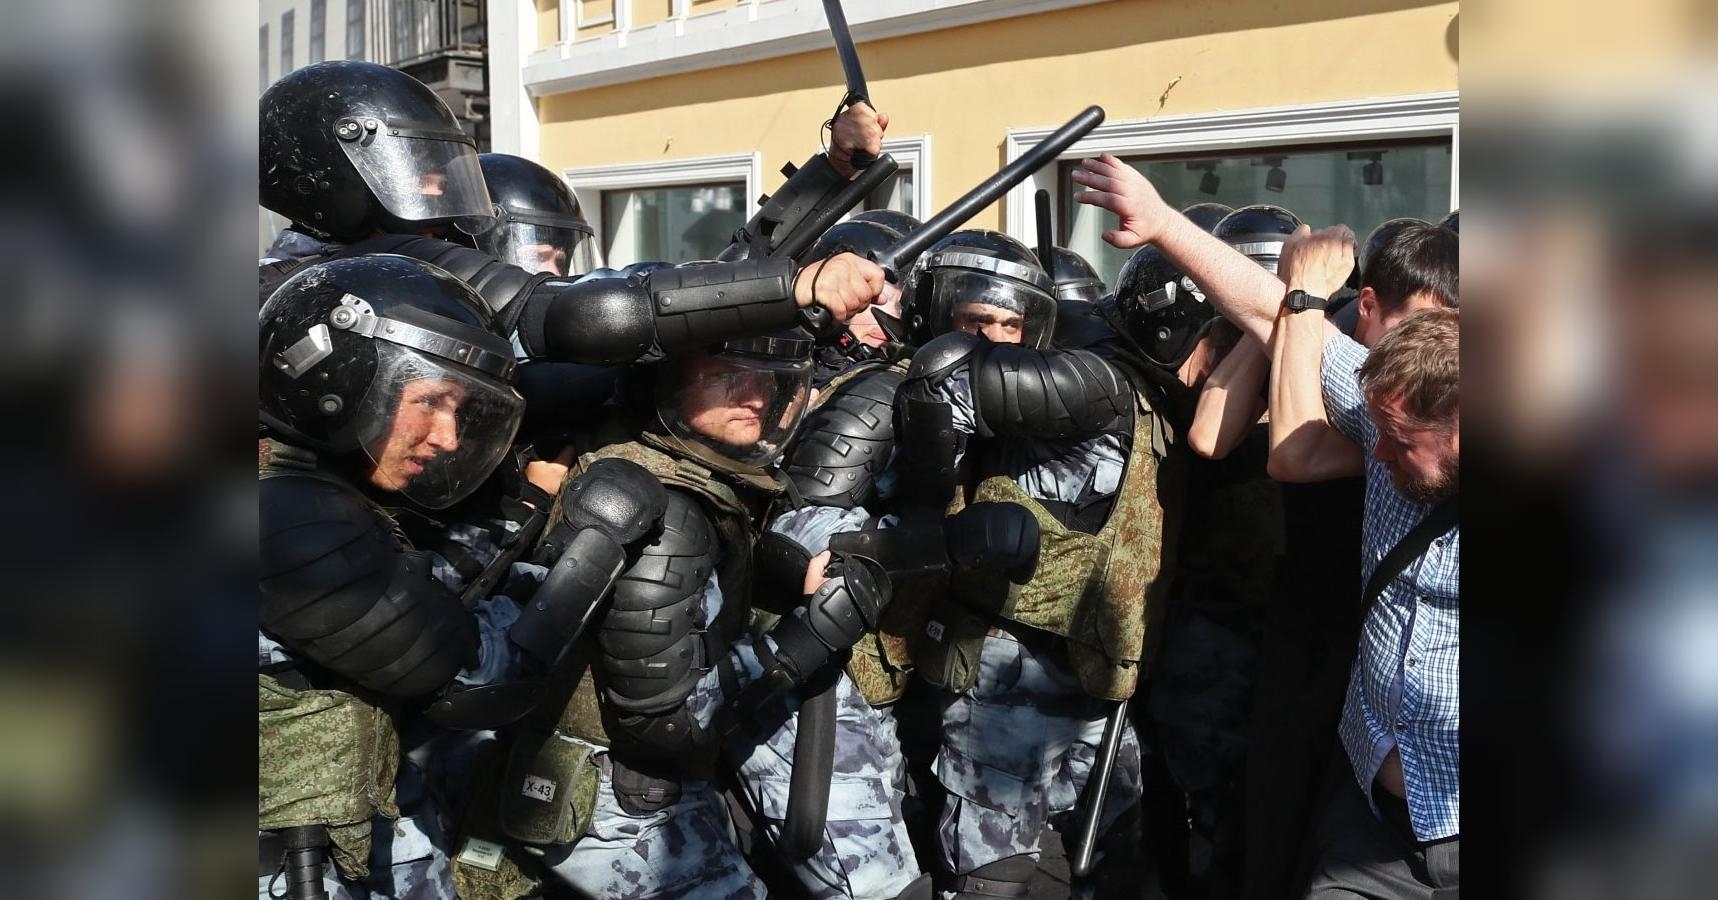 Акция протеста в центре Москвы: есть задержанные - ВИДЕО